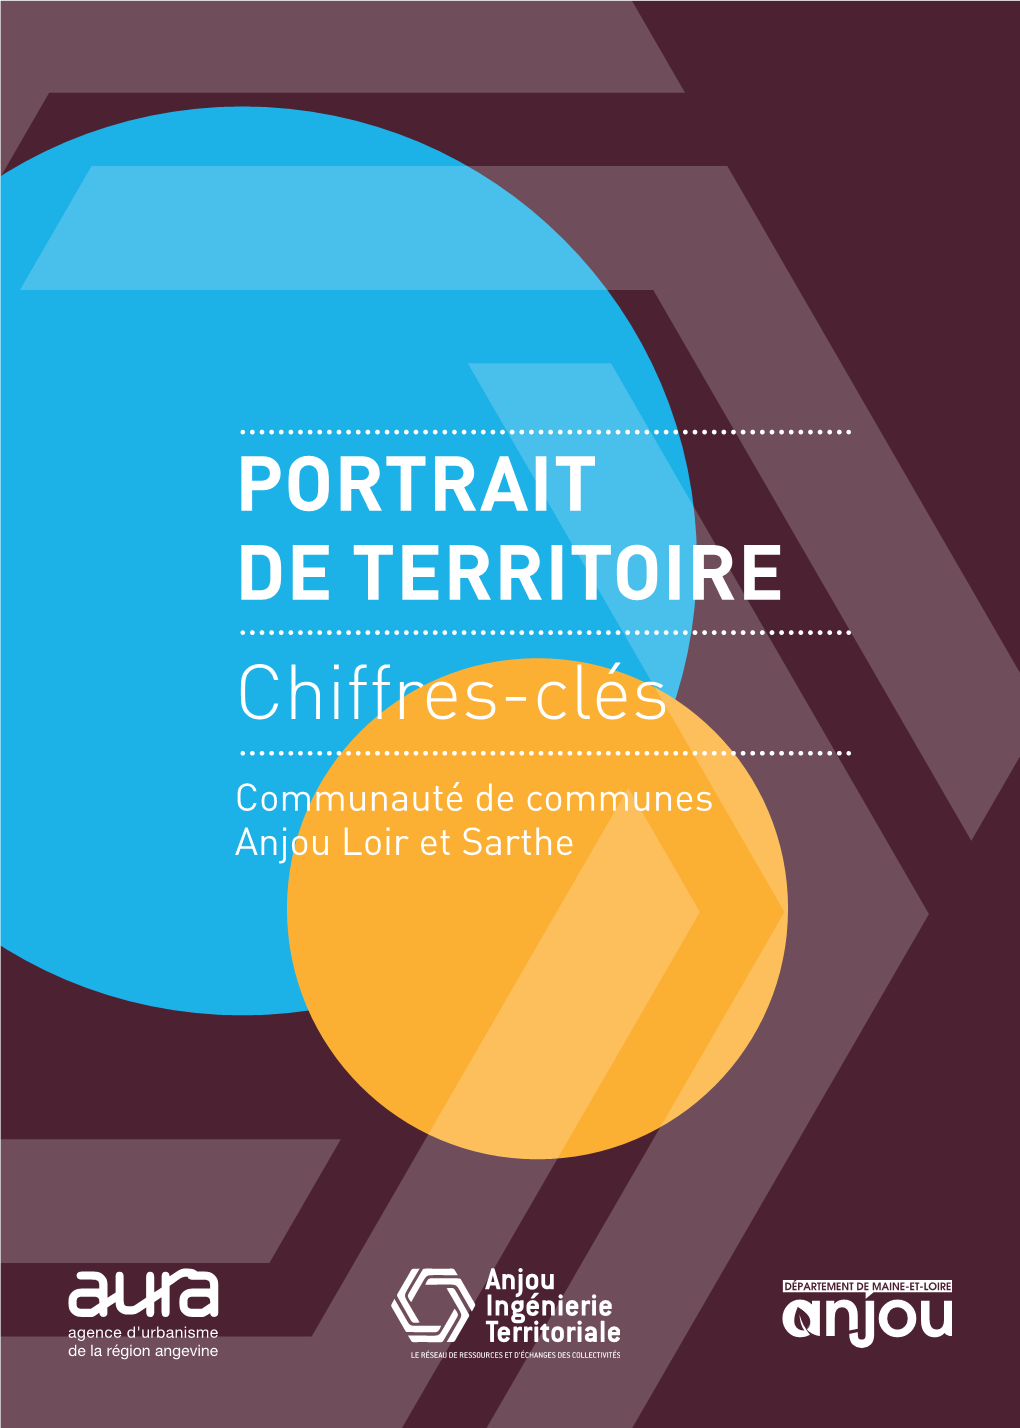 PORTRAIT DE TERRITOIRE Chiffres-Clés